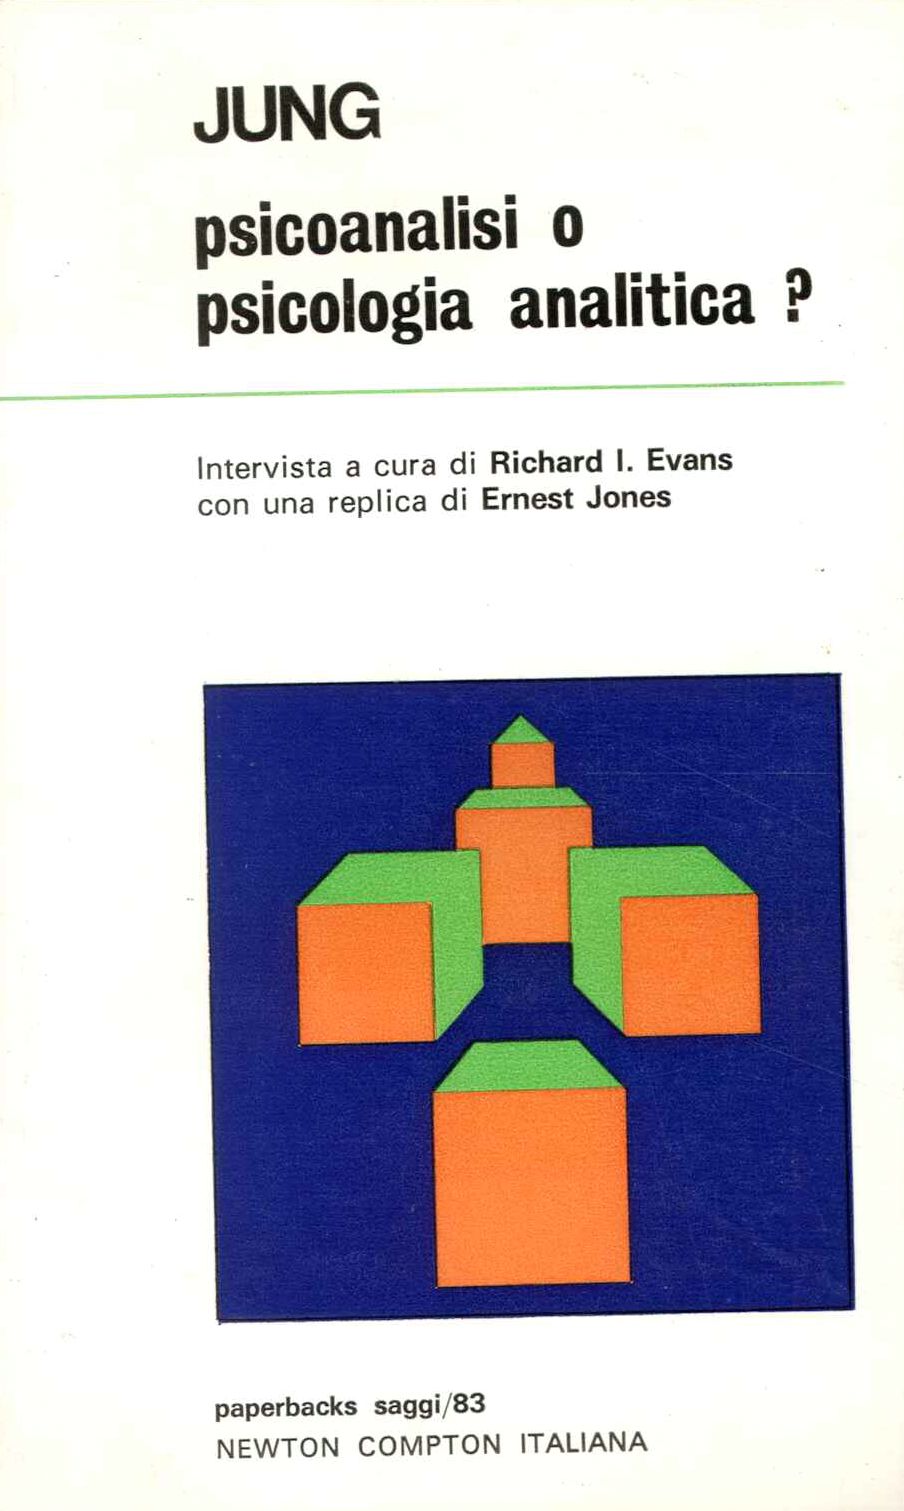 Psicoanalisi o psicologia analitica?